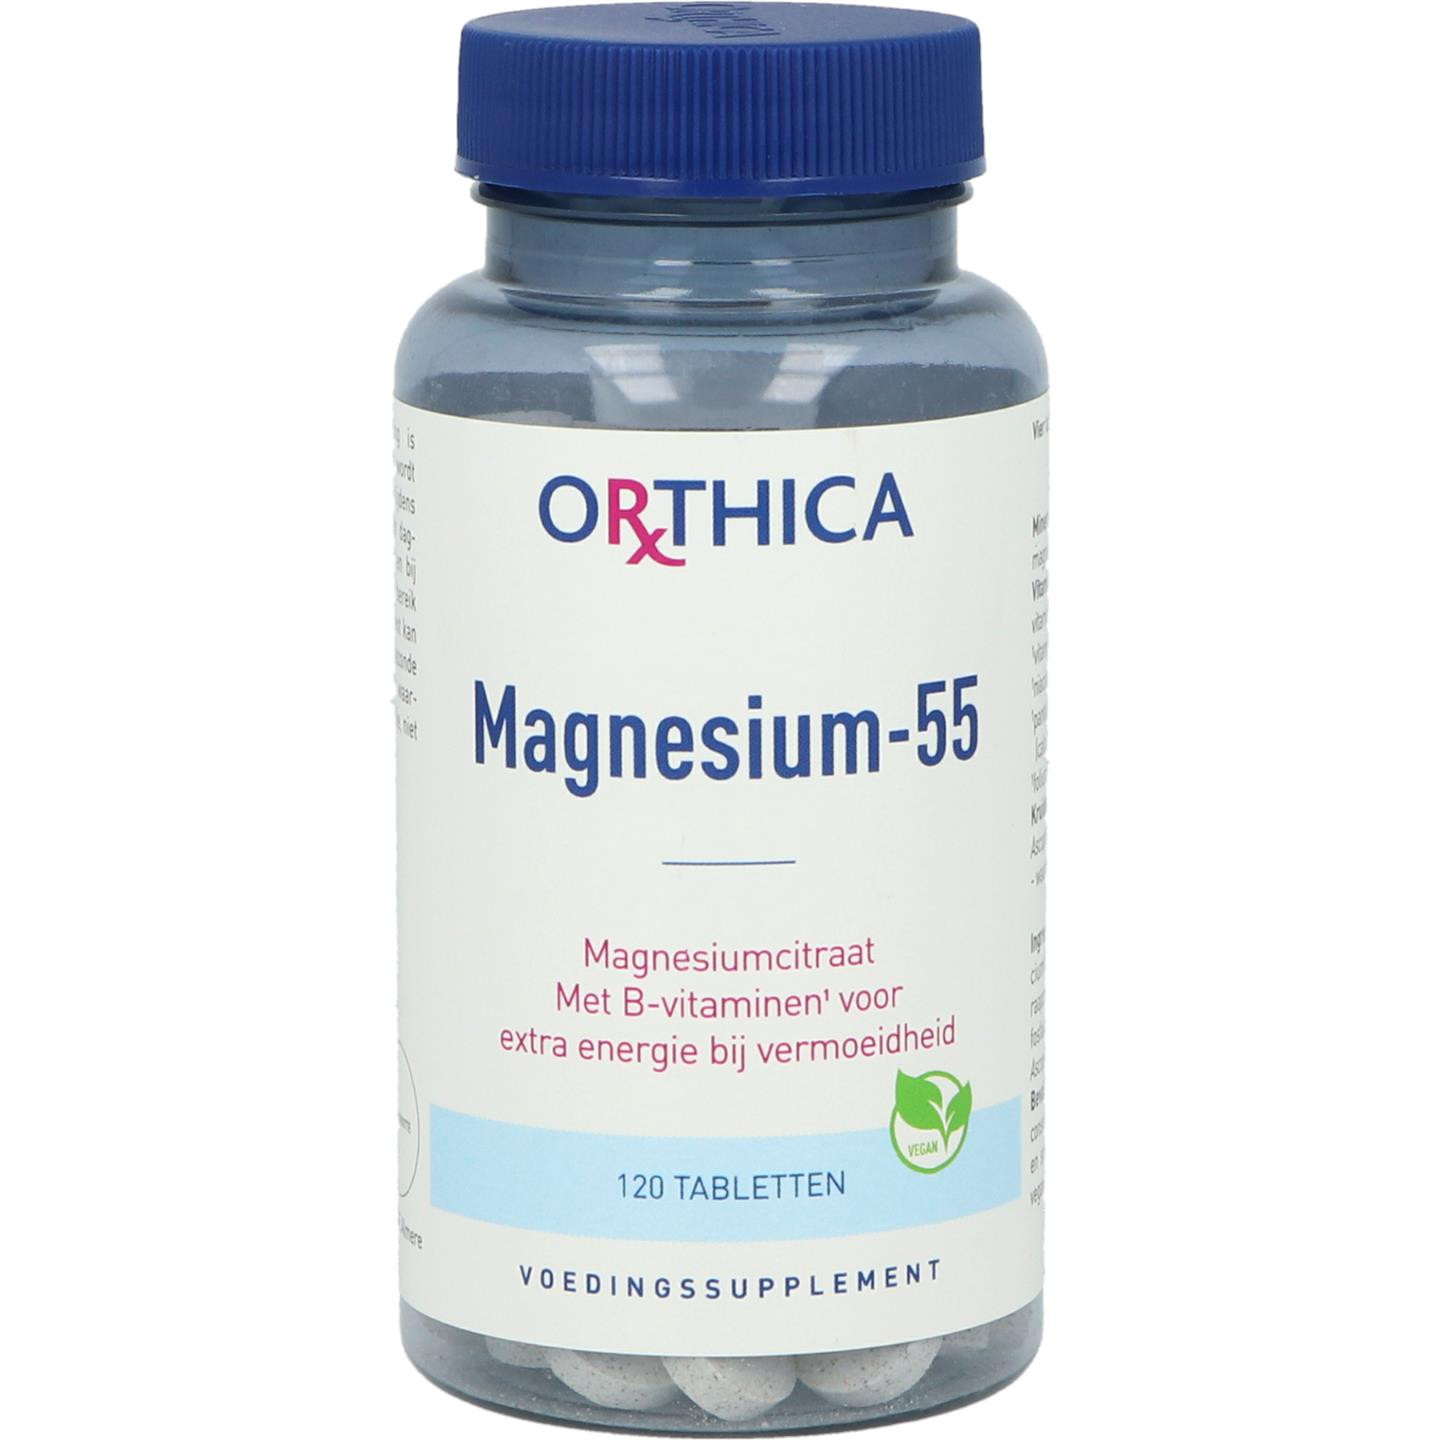 Magnesium-55